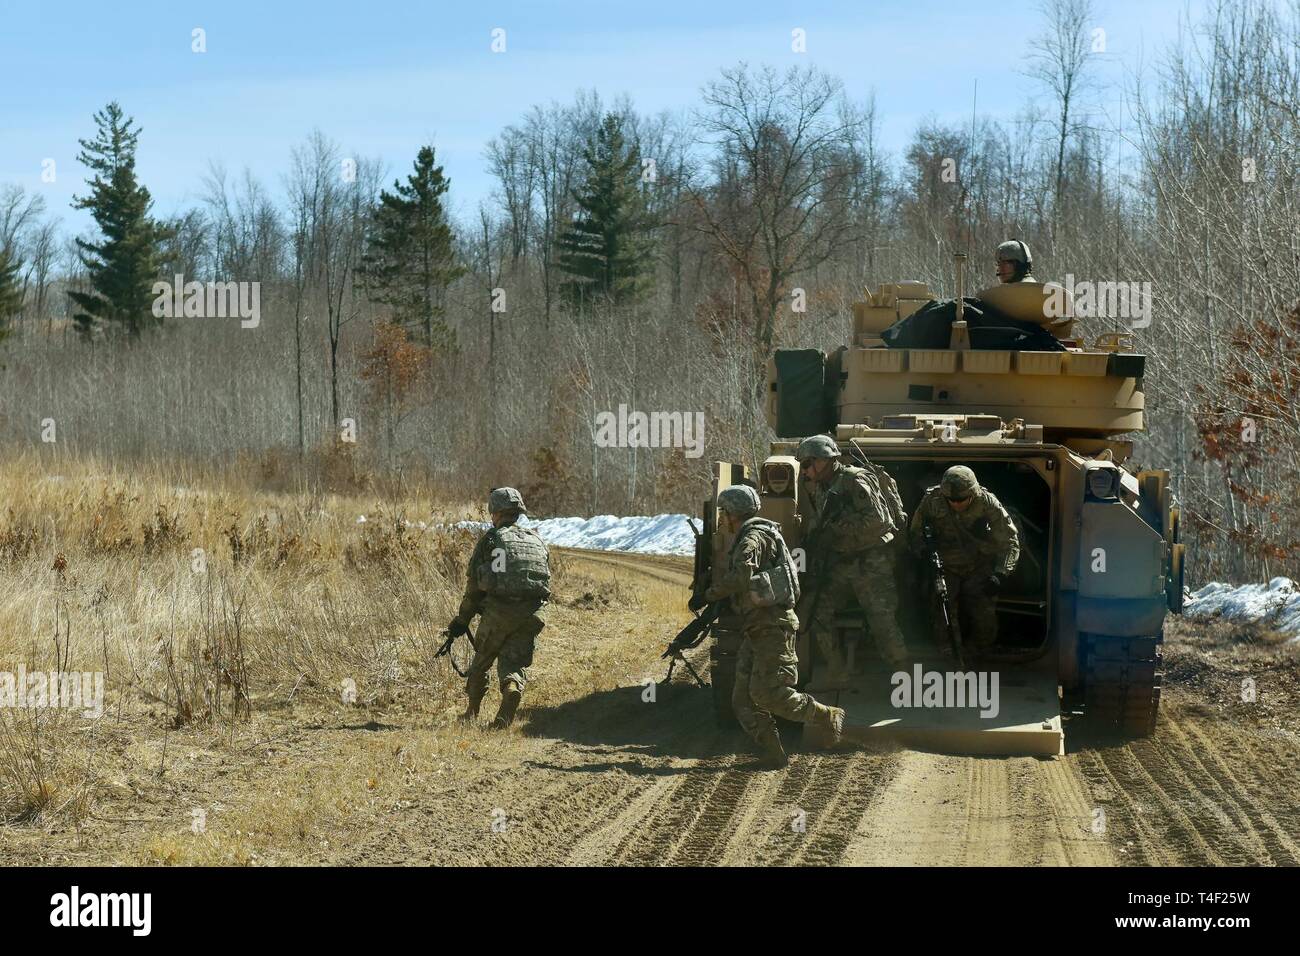 Pfadfinder der 1. Staffel - 94 Kavallerie Abbauen von einem M3A2 Bradley Scout Fahrzeug während der Ausbildung auf einem Squad live - Feuer Bereich April 3, 2019 auf Lager Ripley. Stockfoto